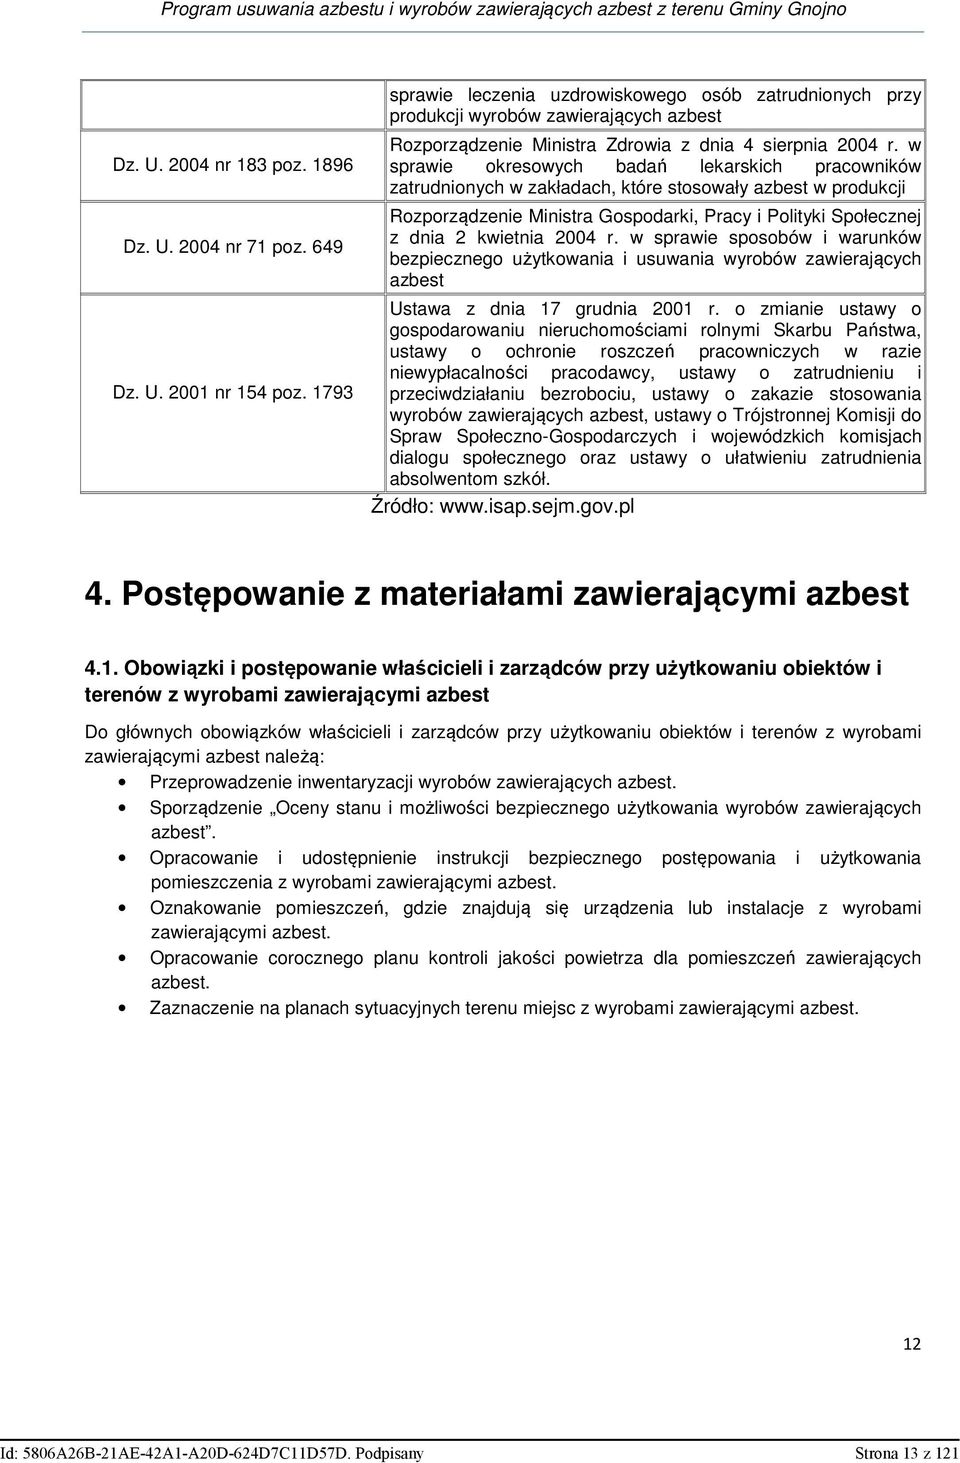 w sprawie okresowych badań lekarskich pracowników zatrudnionych w zakładach, które stosowały azbest w produkcji Rozporządzenie Ministra Gospodarki, Pracy i Polityki Społecznej z dnia 2 kwietnia 2004